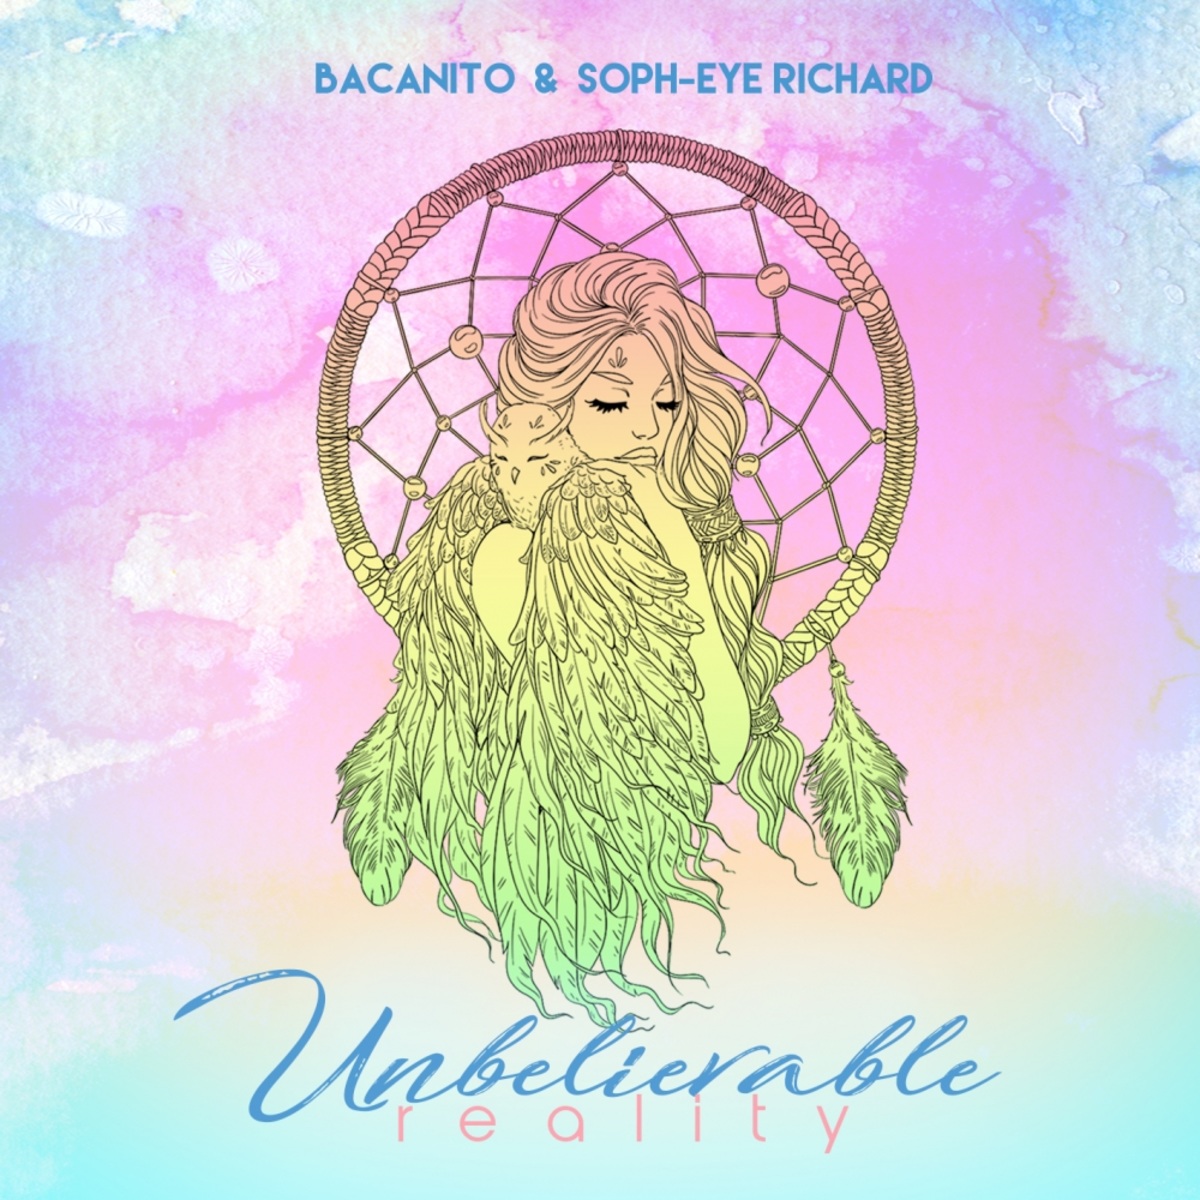 Bacanito & Soph-eye Richard - Unbelievable Reality / We Go Deep